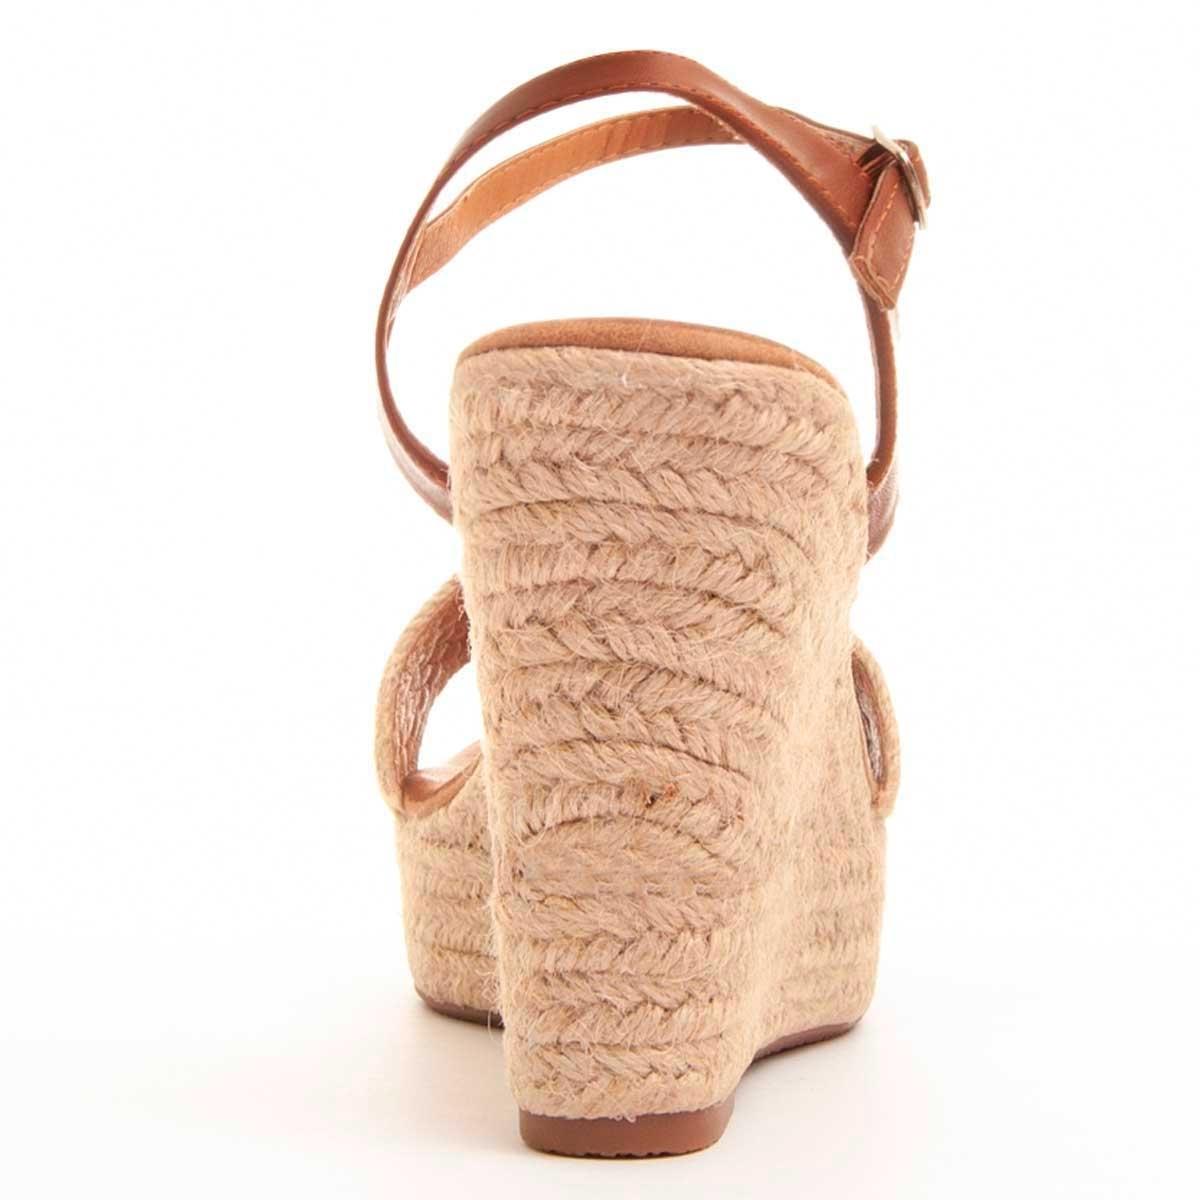 Sandalias de Cuña - Beige - Altura: 9 cm